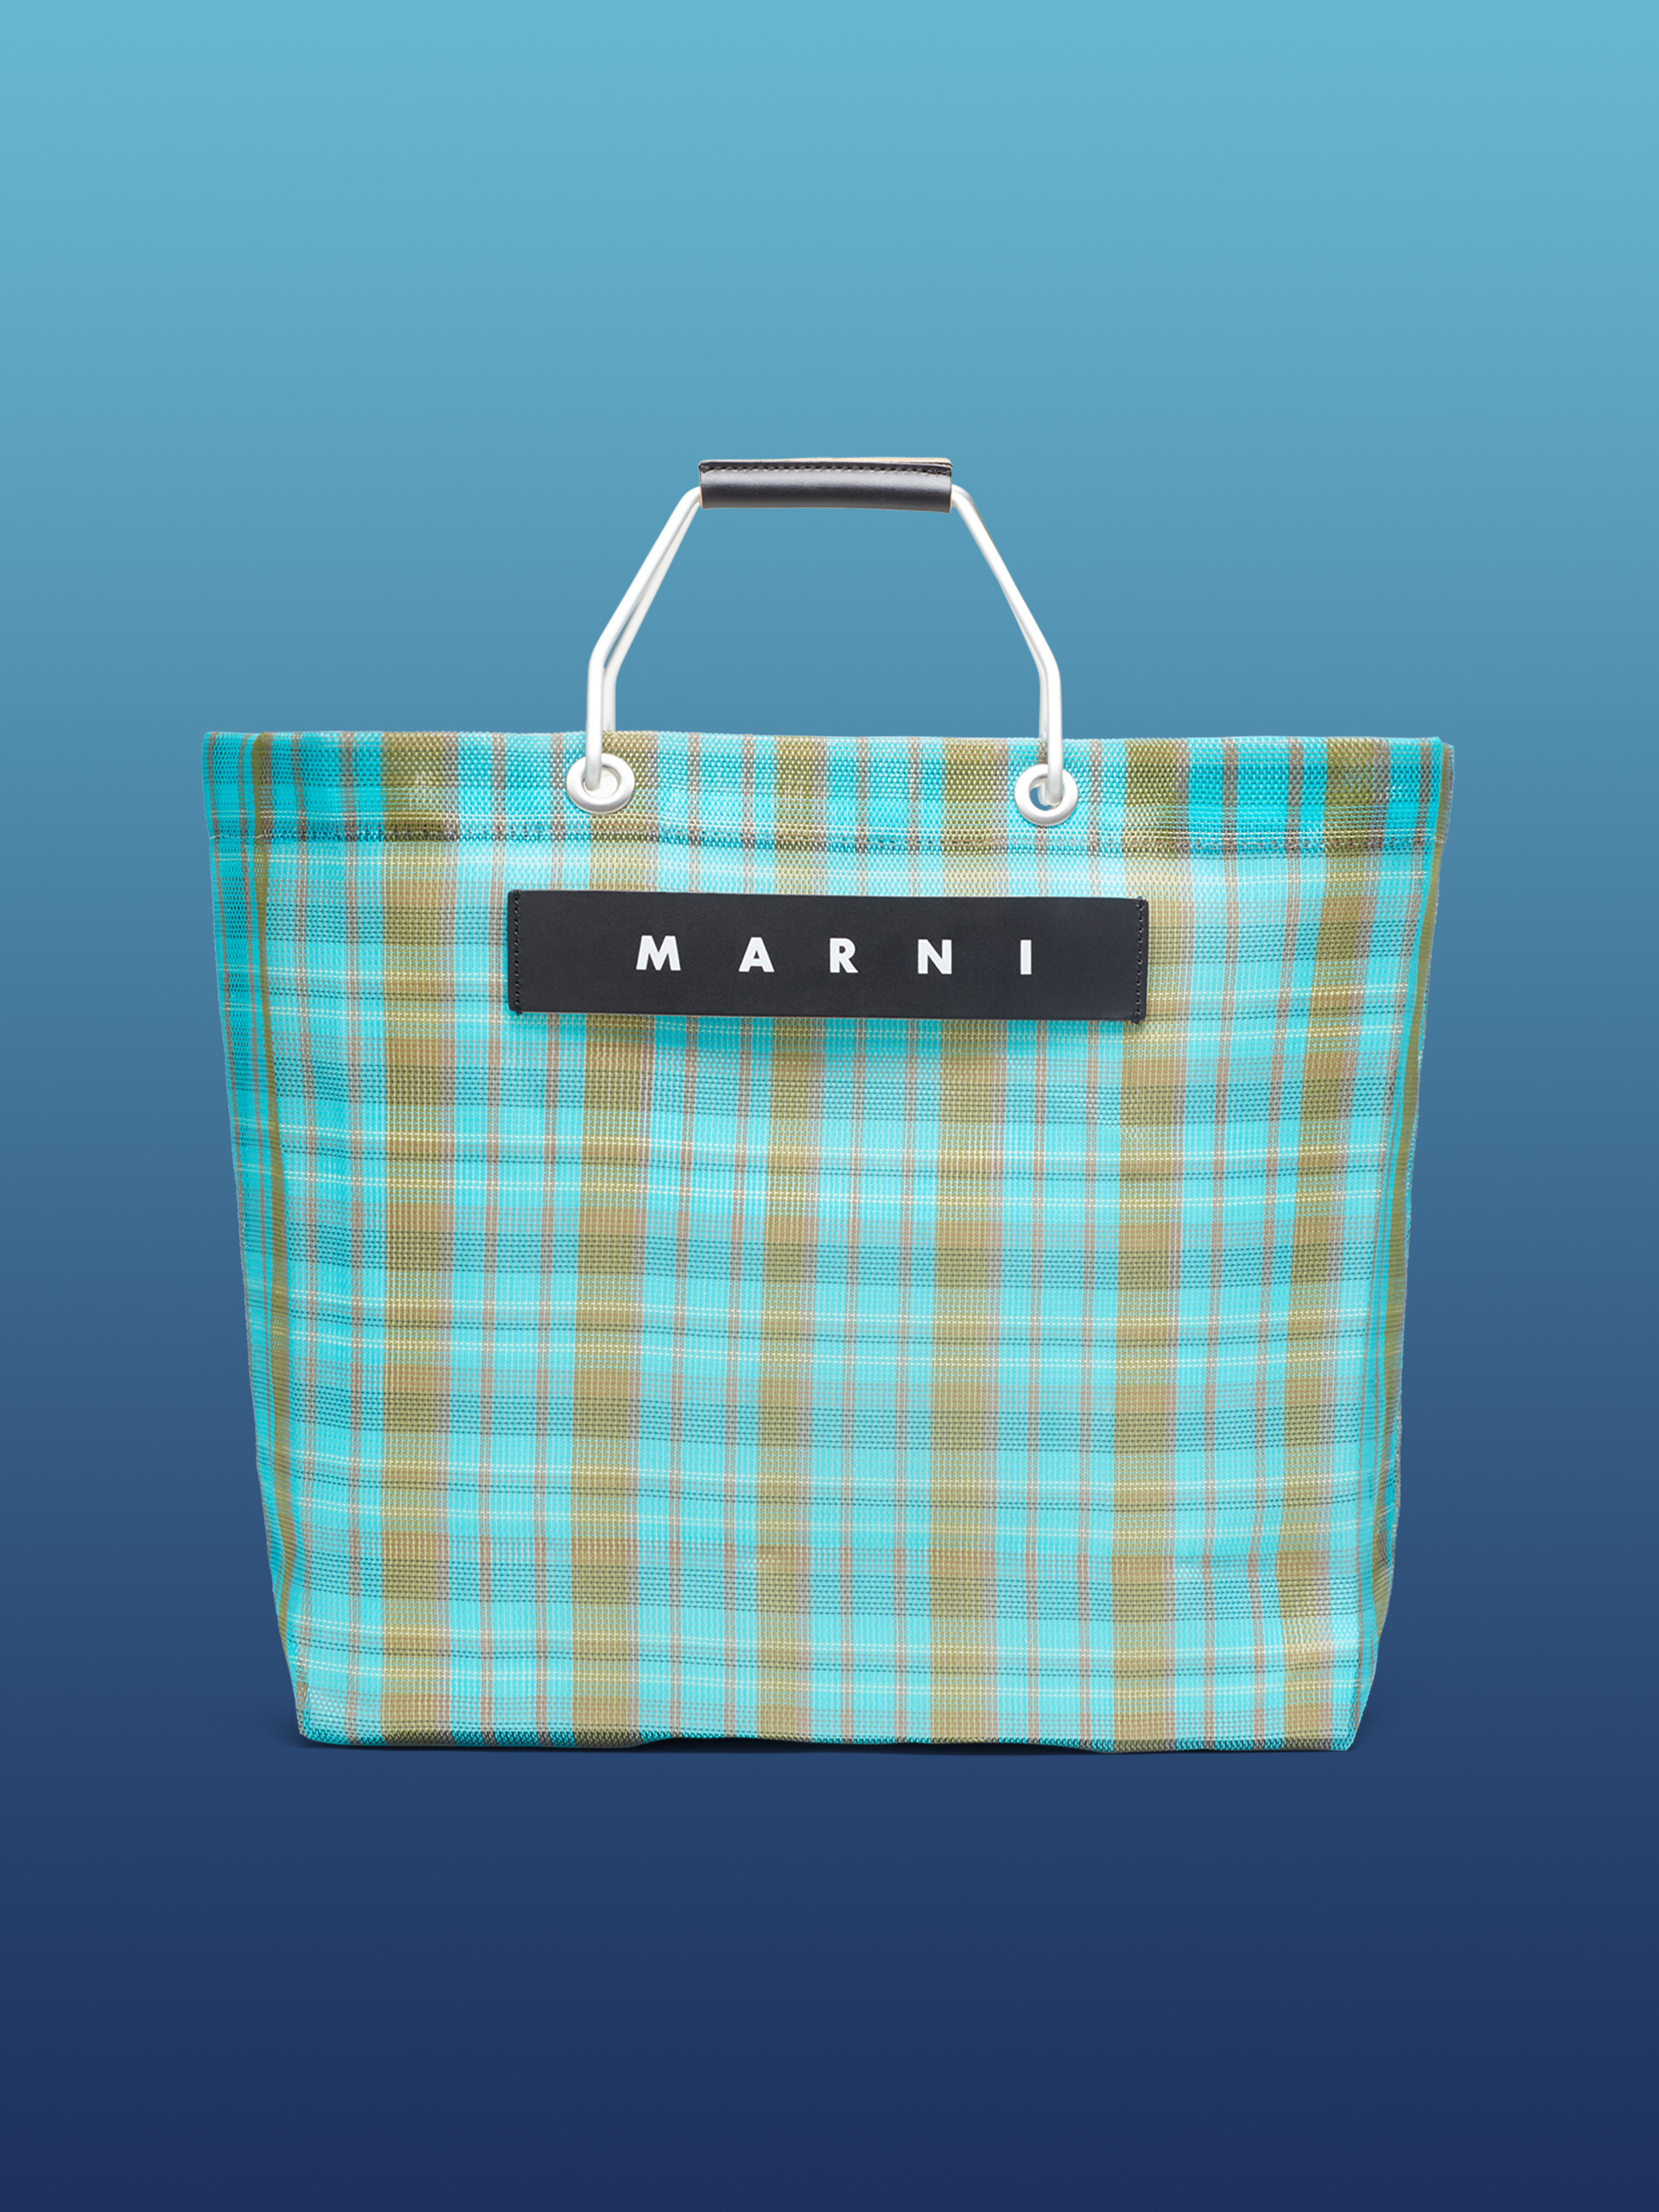 マルニの30代におすすめのバッグはショッピングバッグストライプです